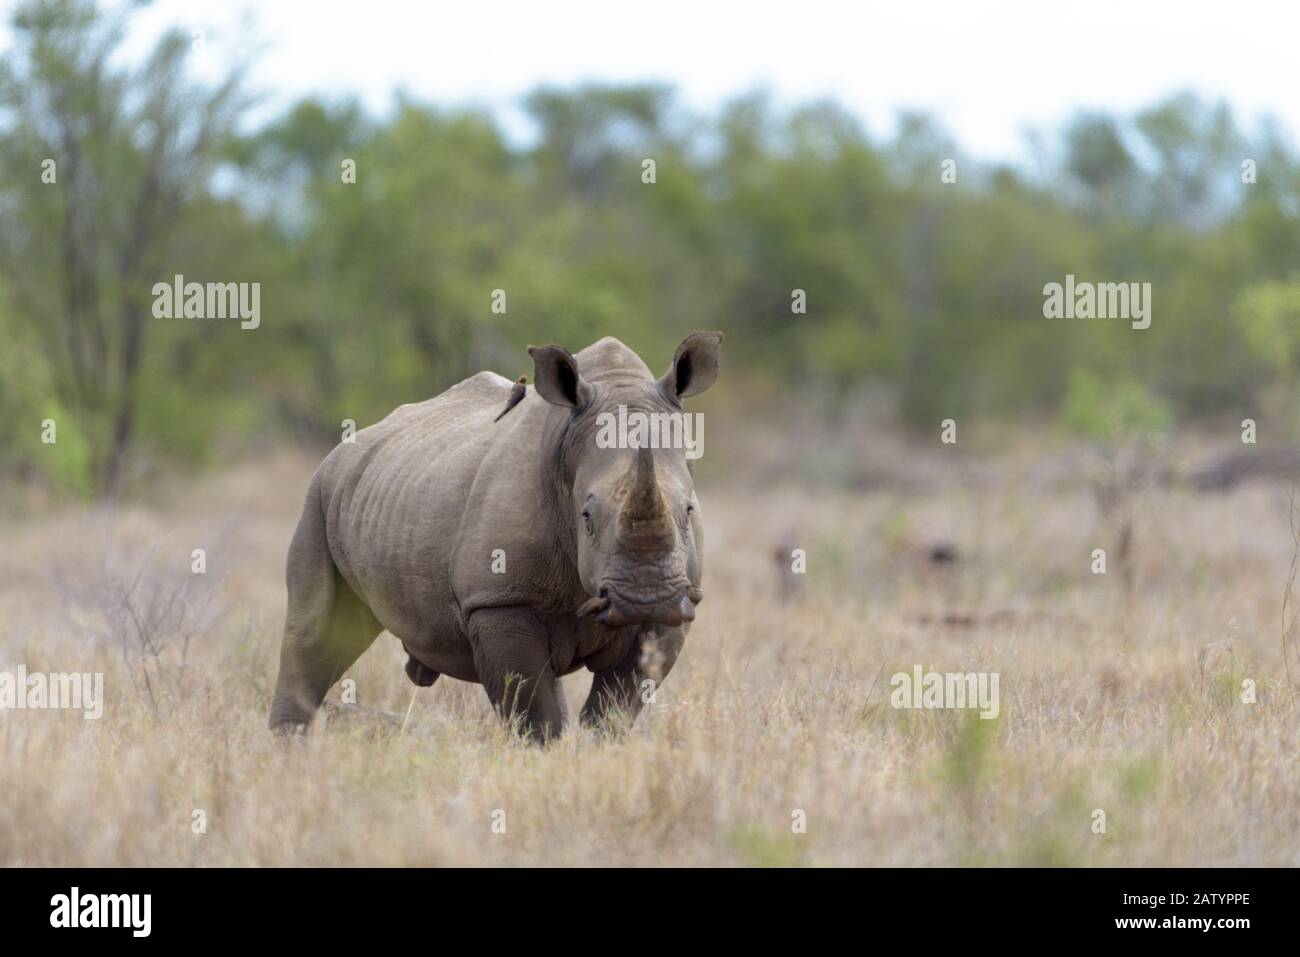 White Rhino in the wilderness Stock Photo